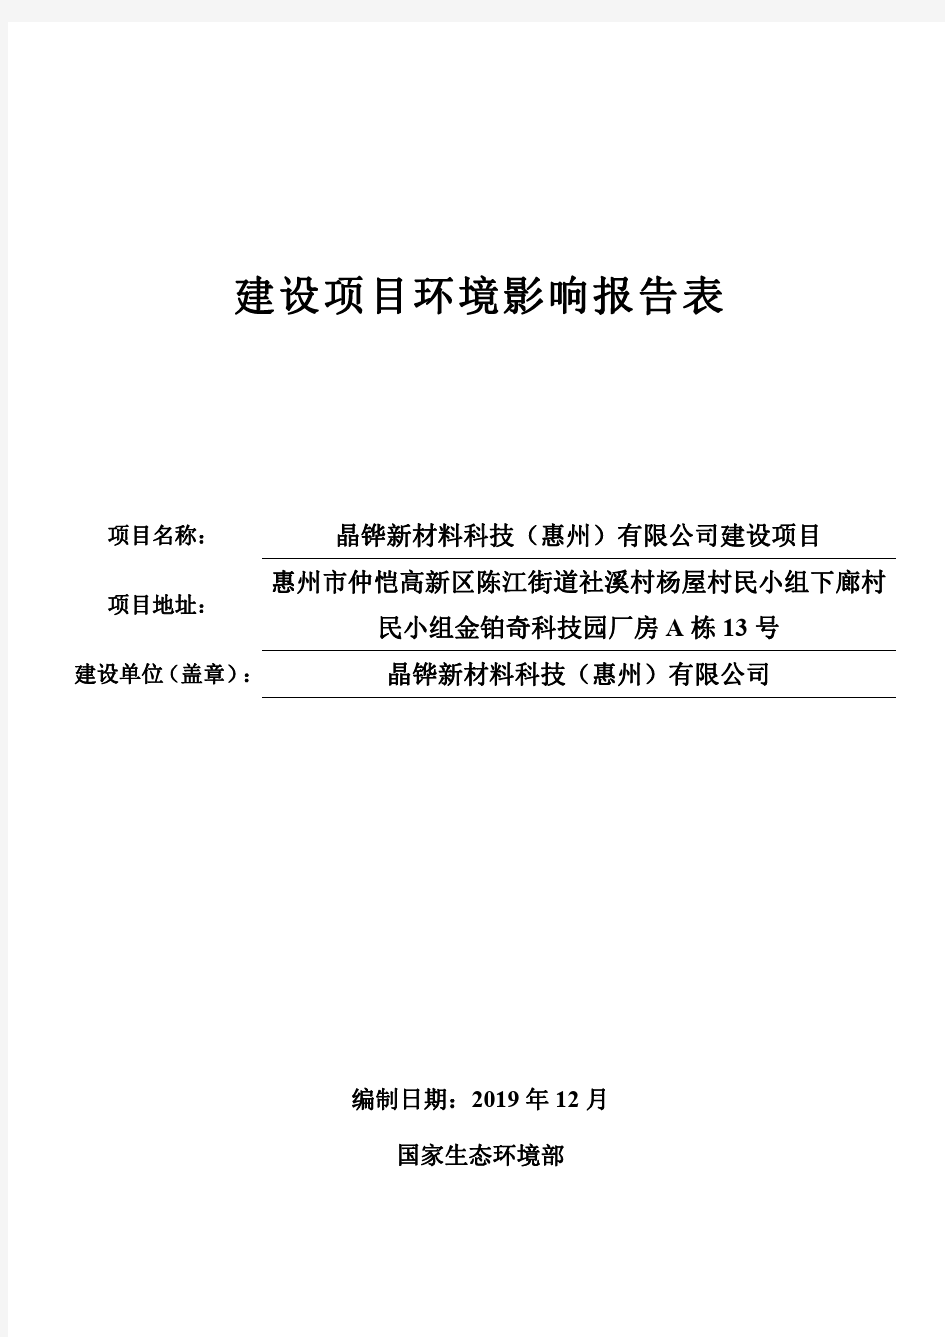 晶铧新材料科技(惠州)有限公司PET保护膜胶带双面胶生产建设项目环评报告表